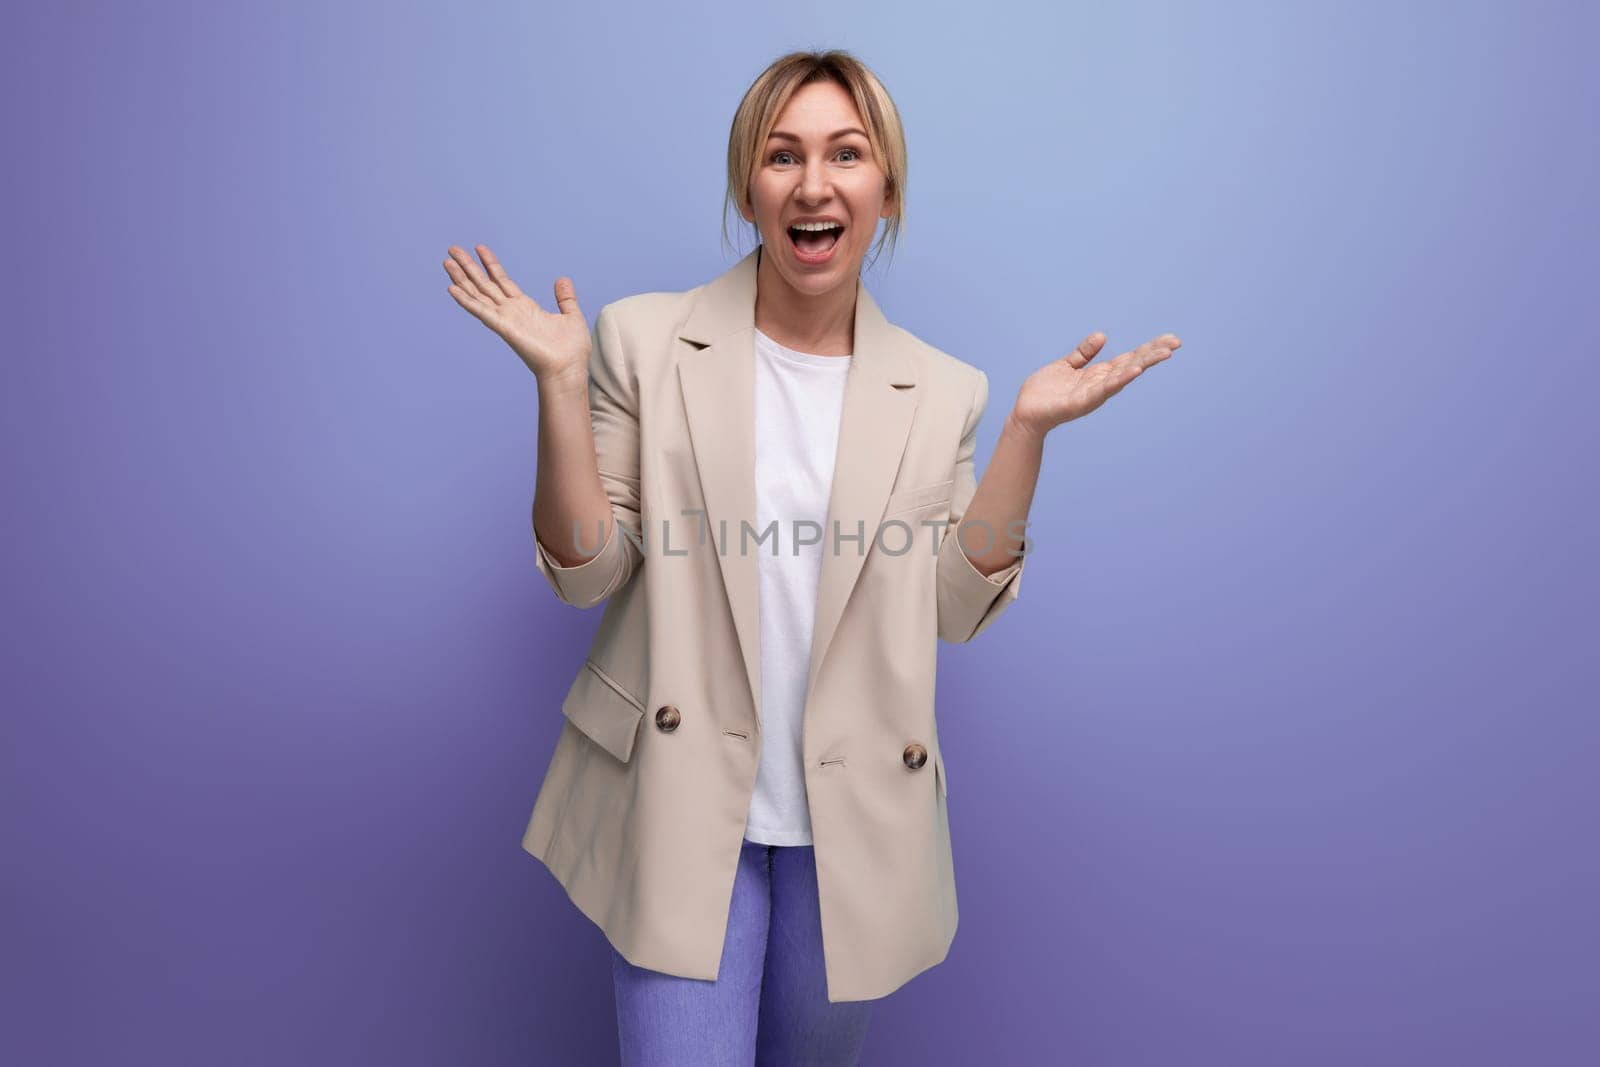 joyful blond business woman in office jacket on studio background.